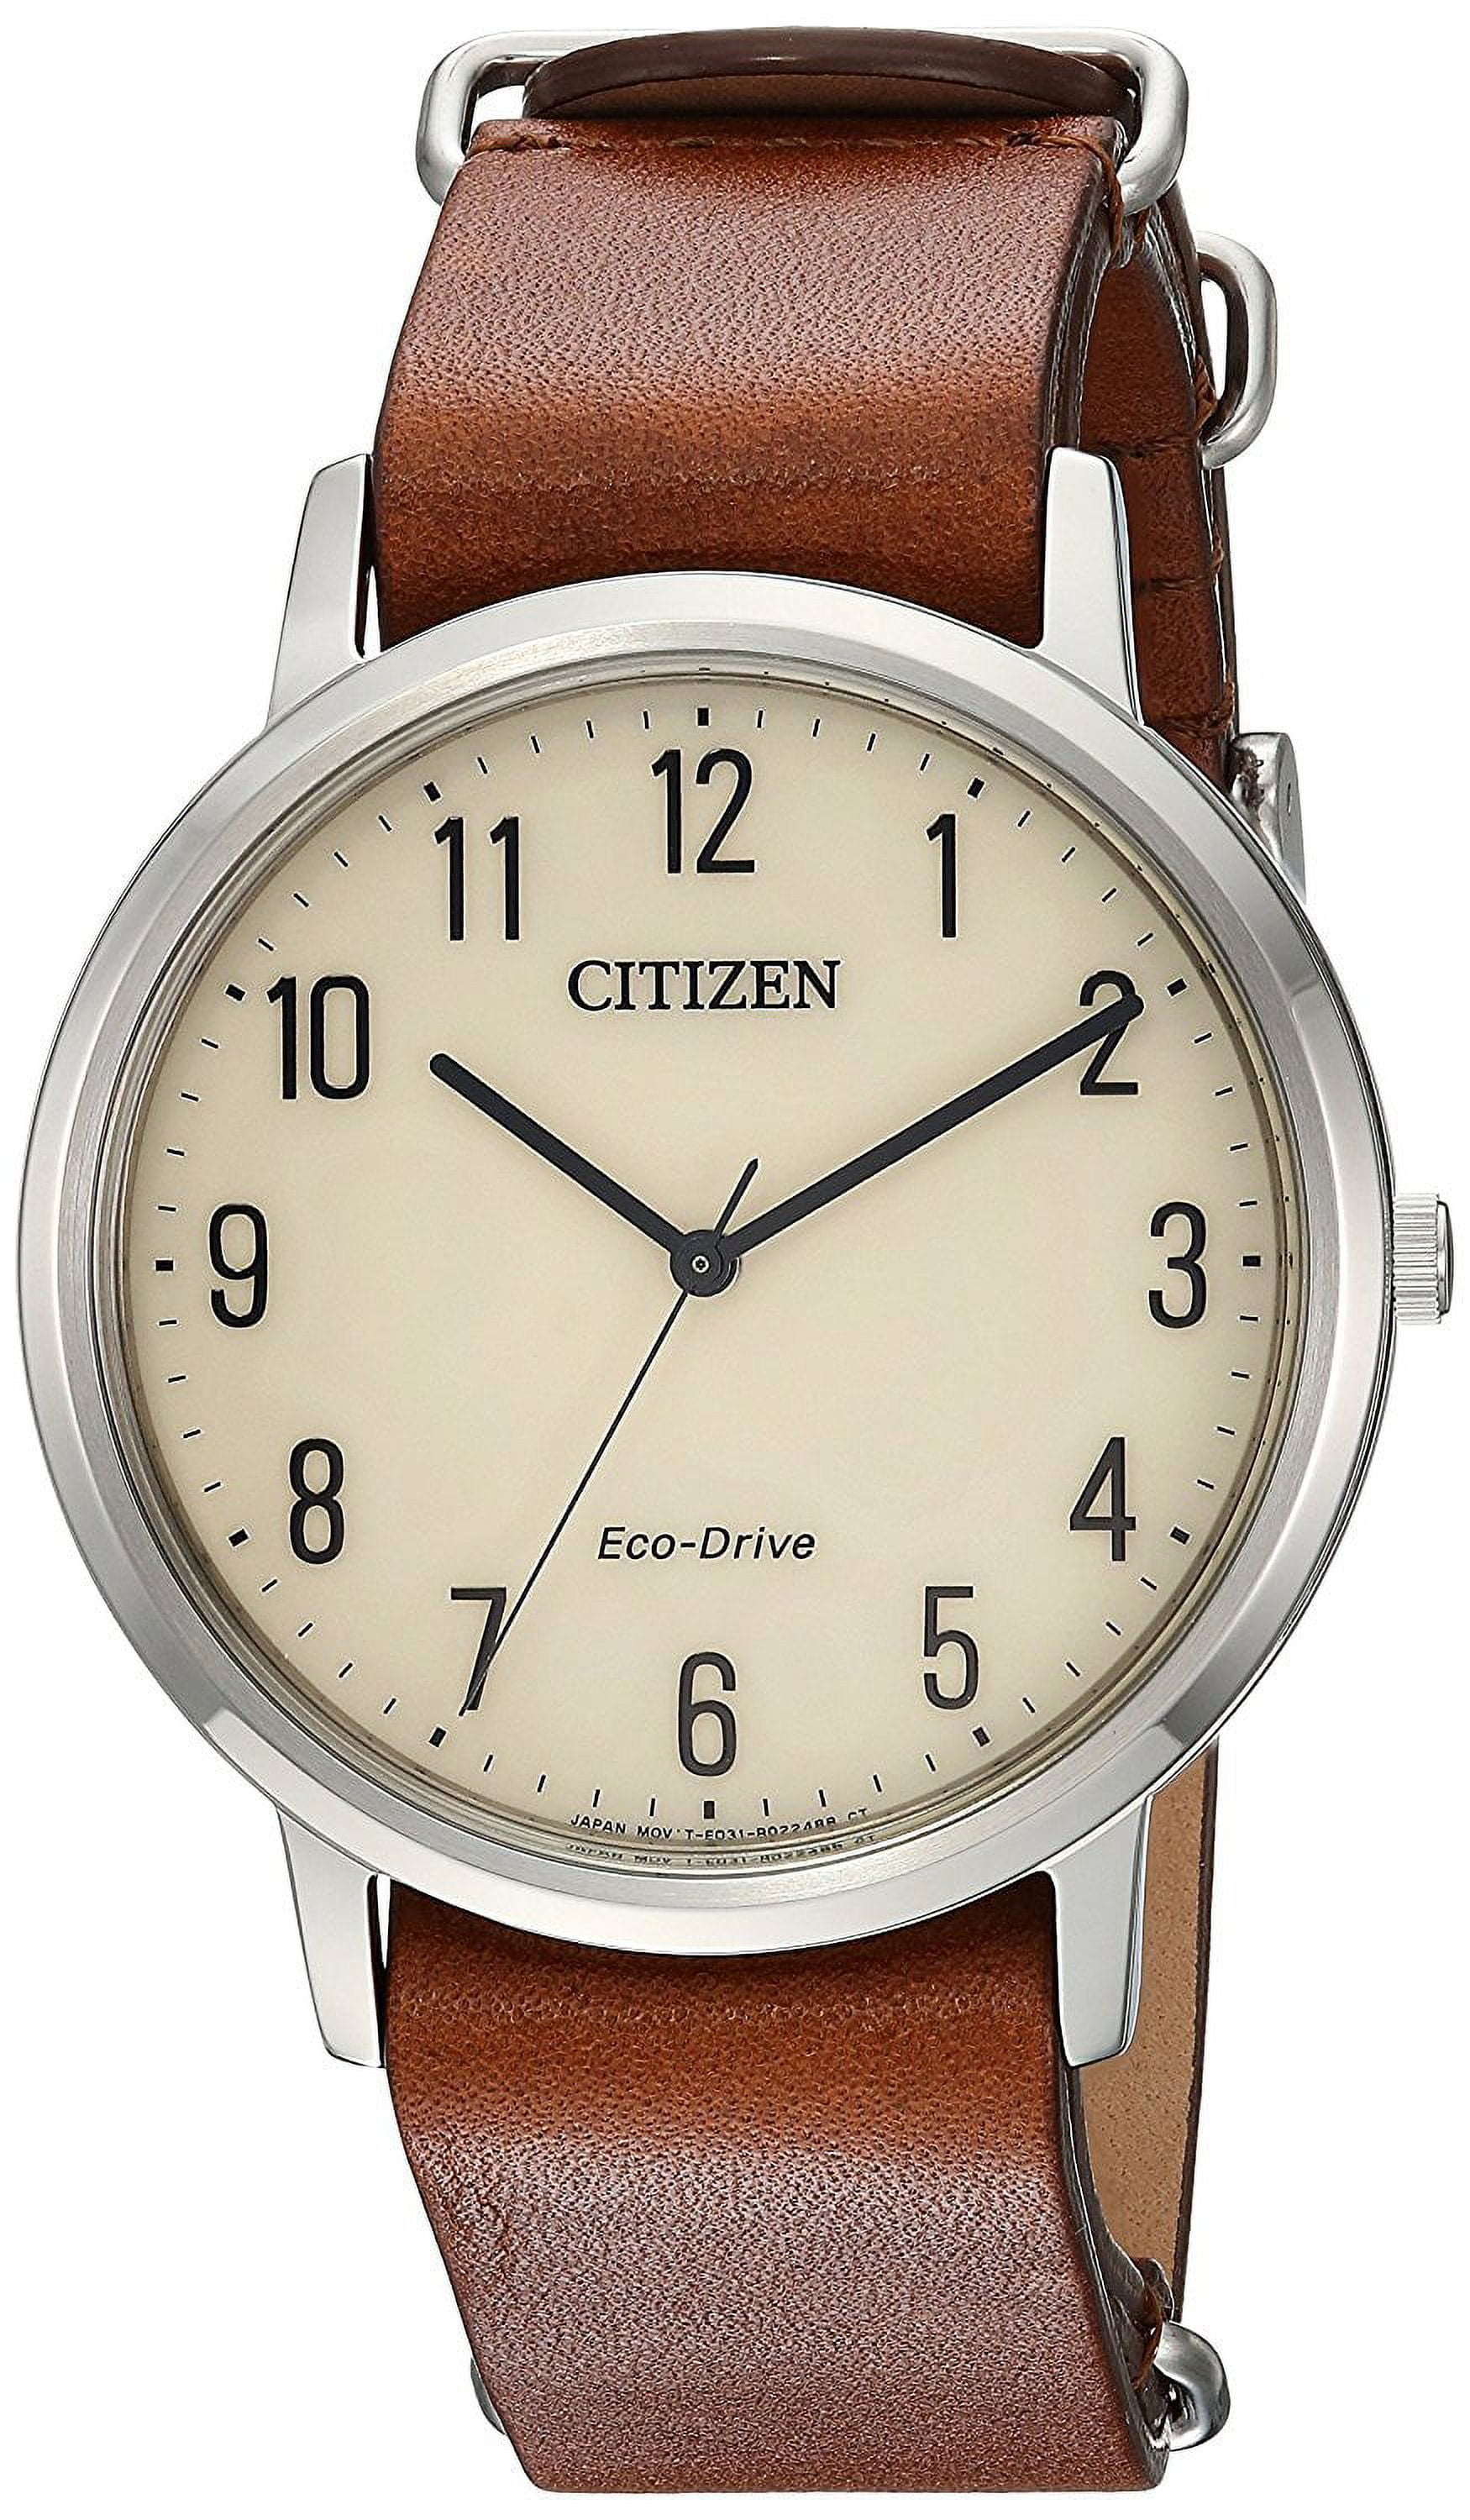 Citizen Men's Eco-Drive Leather Watch BJ6500-04E